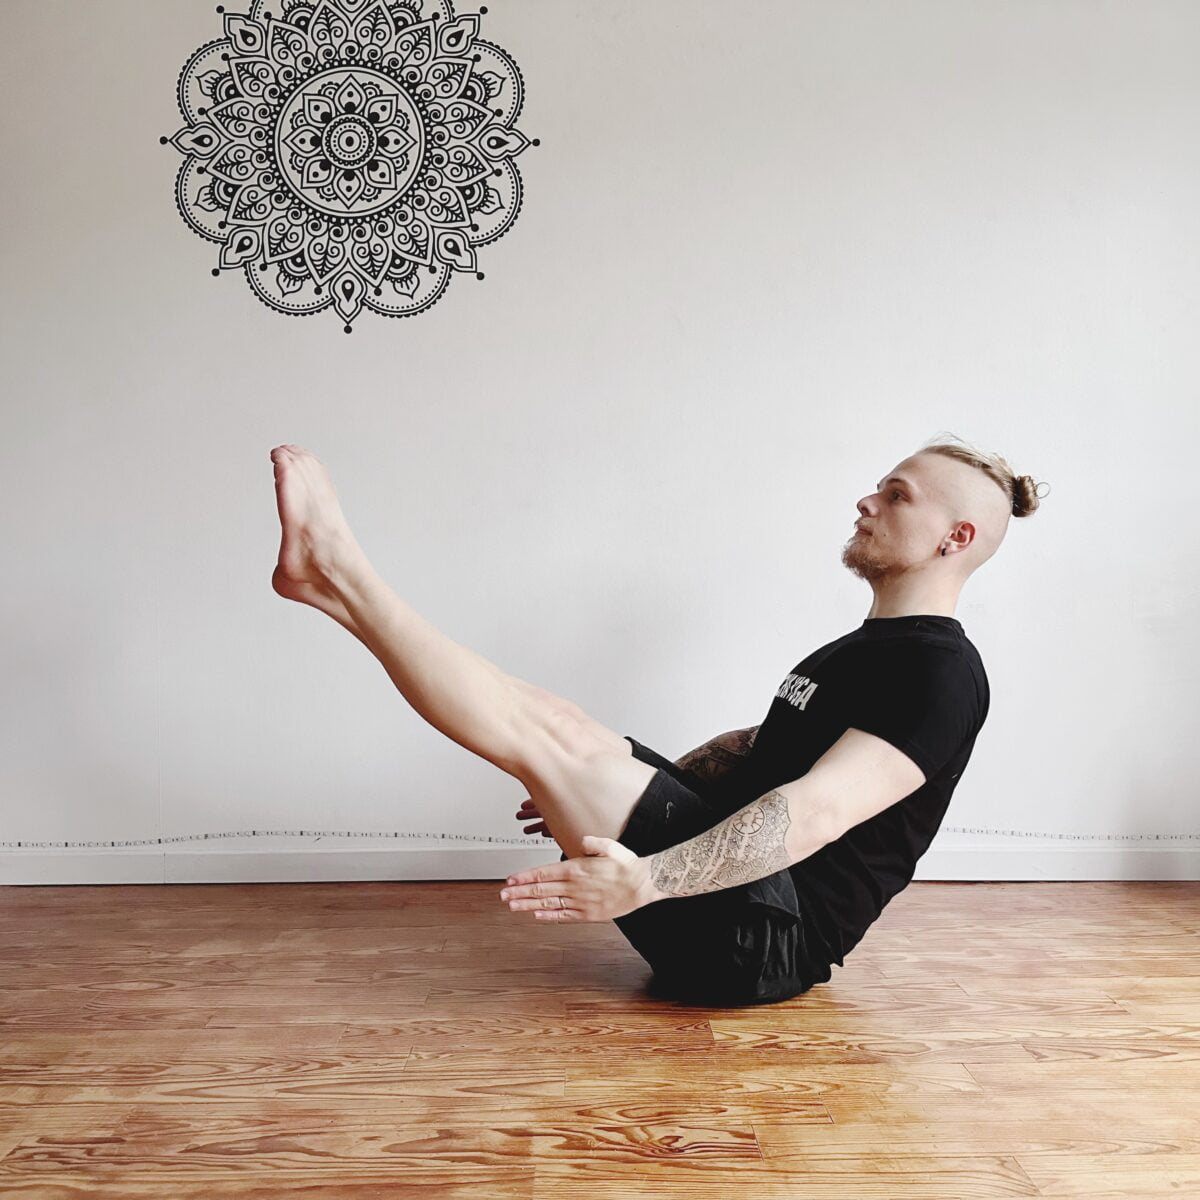 Qu’est-ce qui est le plus efficace entre le Yoga et le stretching ? 